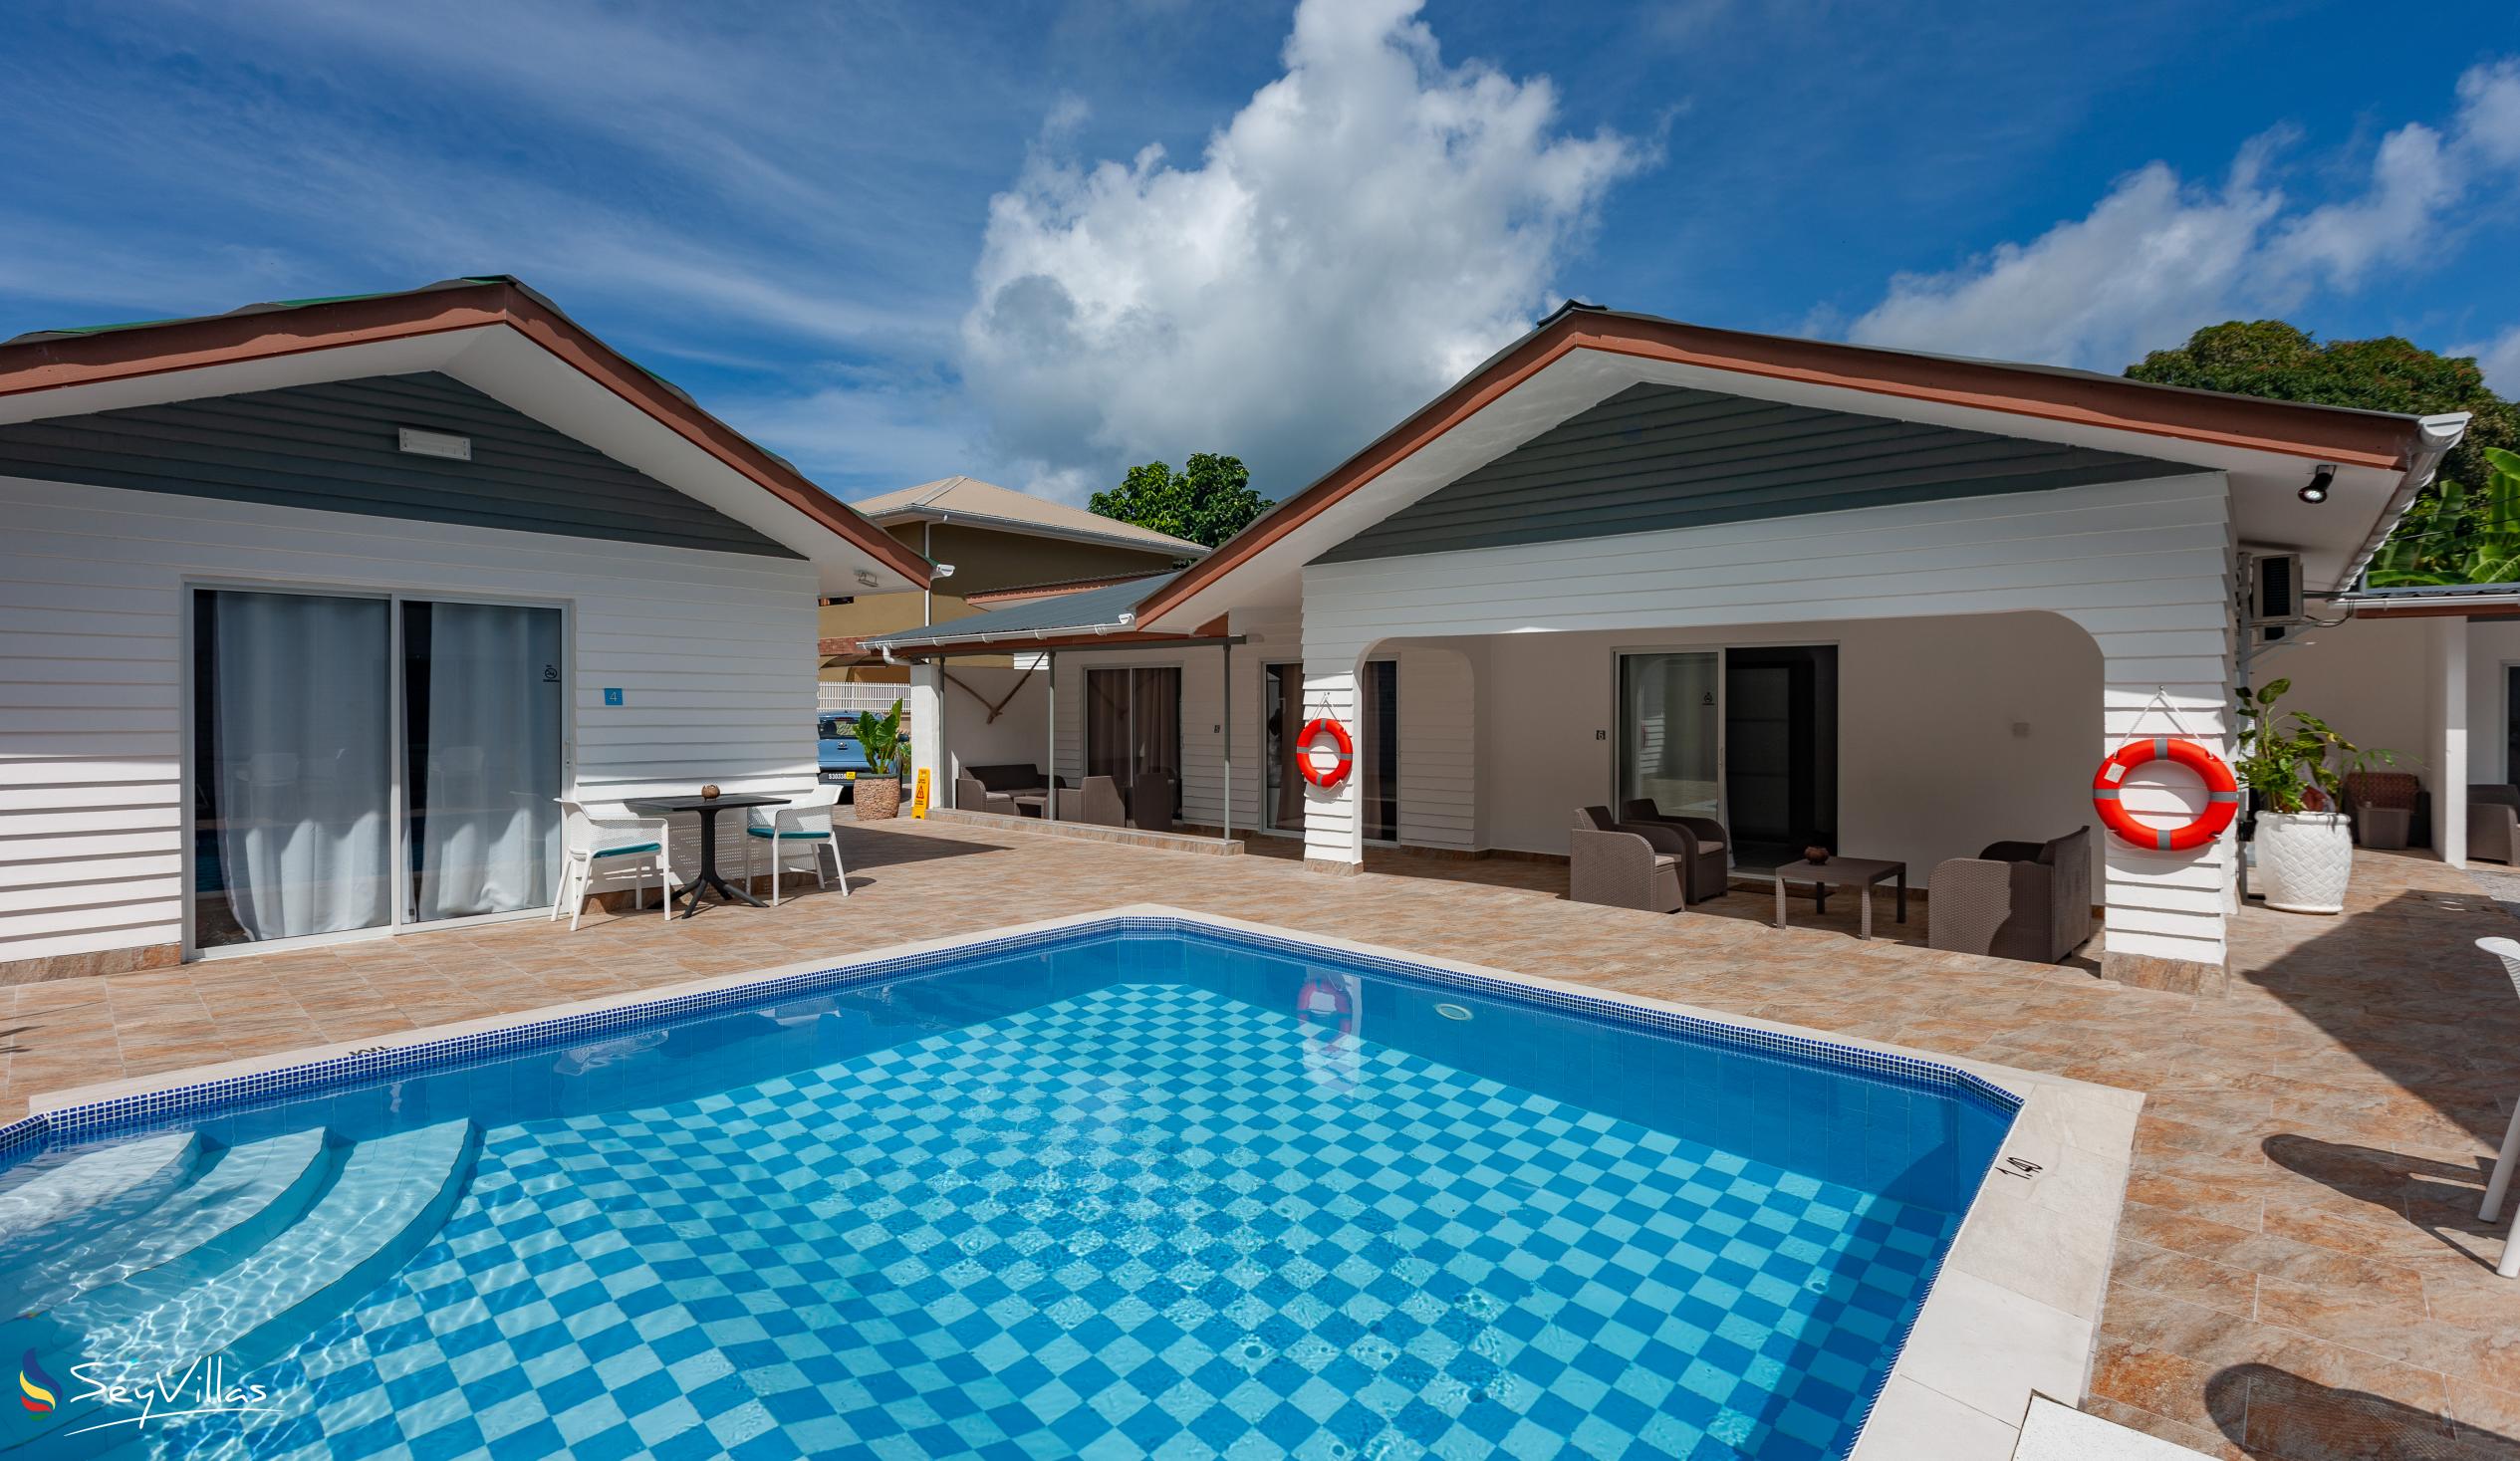 Foto 8: Hotel Plein Soleil - Aussenbereich - Praslin (Seychellen)